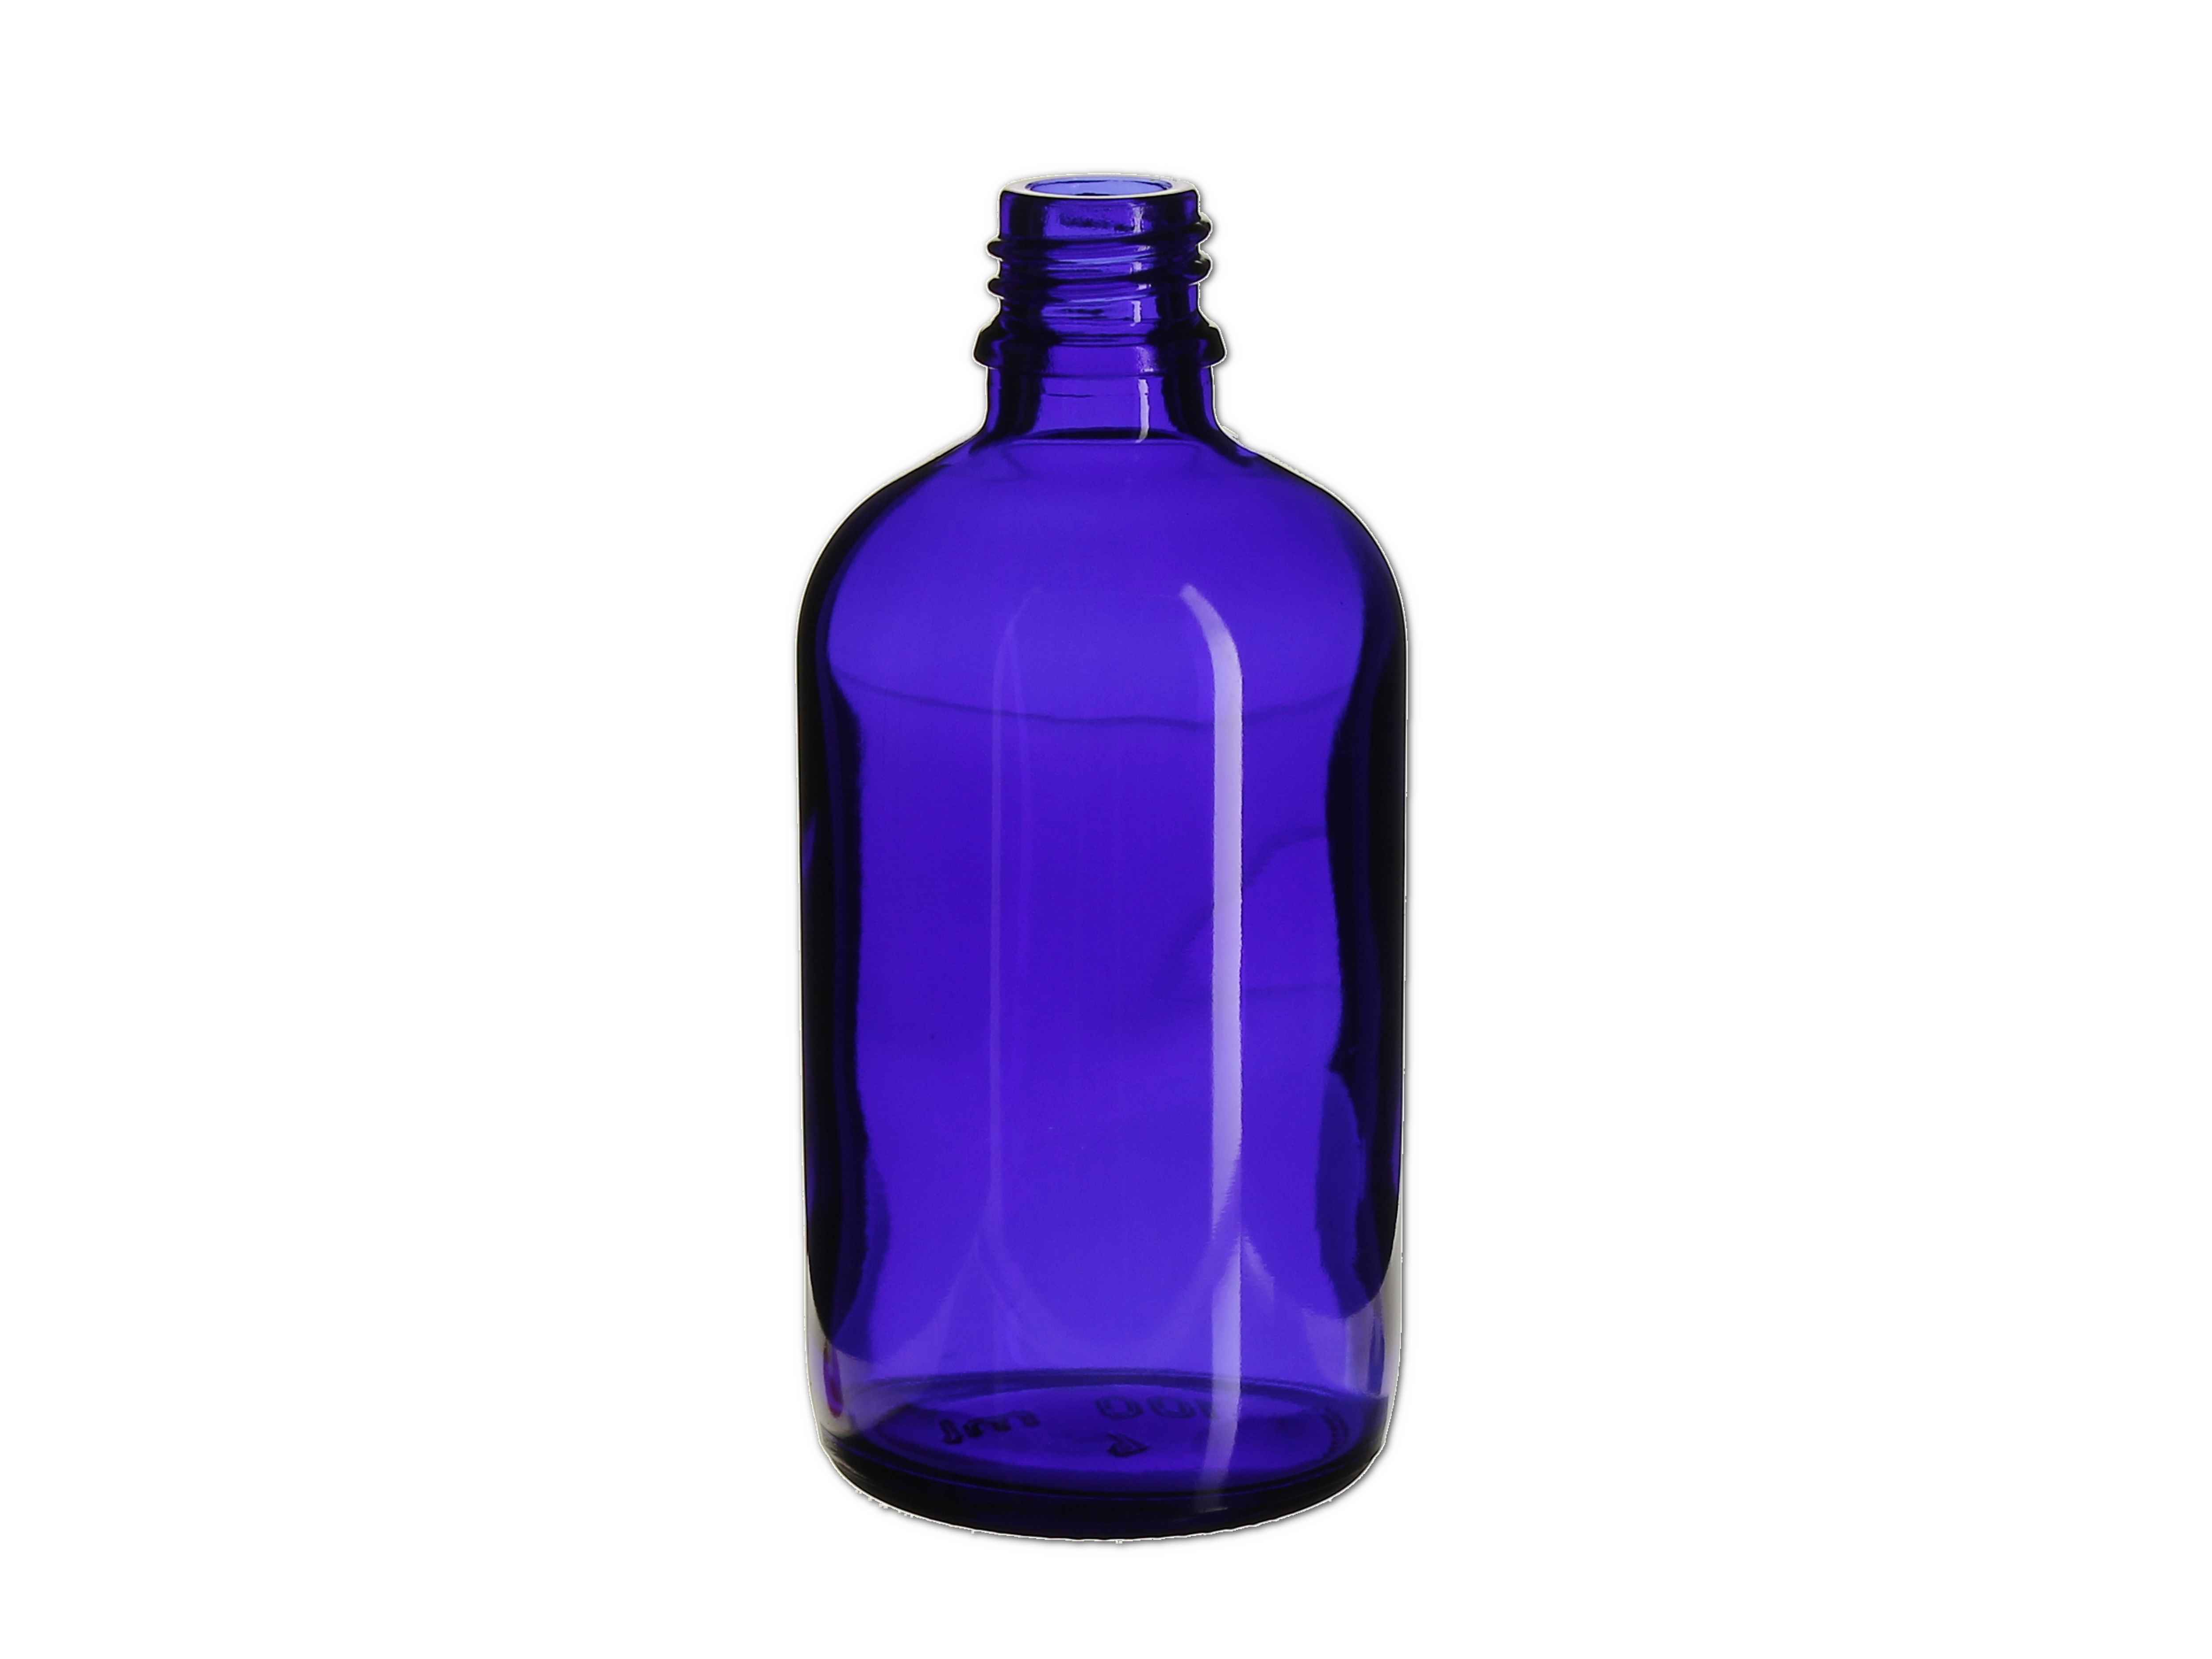    Flasche blau - GL18 - 100ml